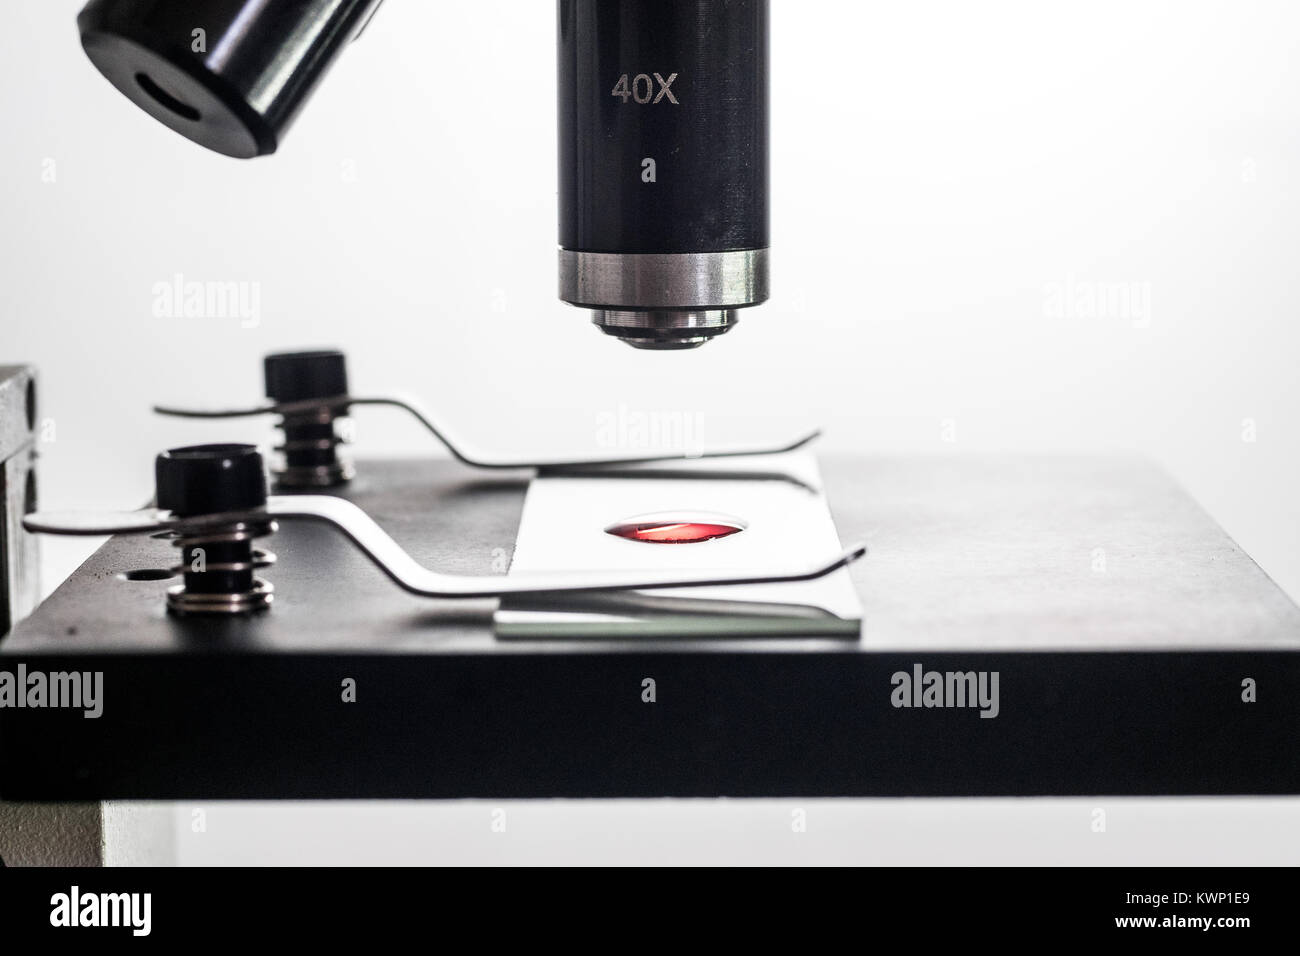 Mikroskop und Mikroskop Objektträger closeup, hinterleuchtet, Makro, mit einem kleinen roten Blutkörperchen Substanz liquid Droplet auf dem Objektträger, weiß backgr Stockfoto